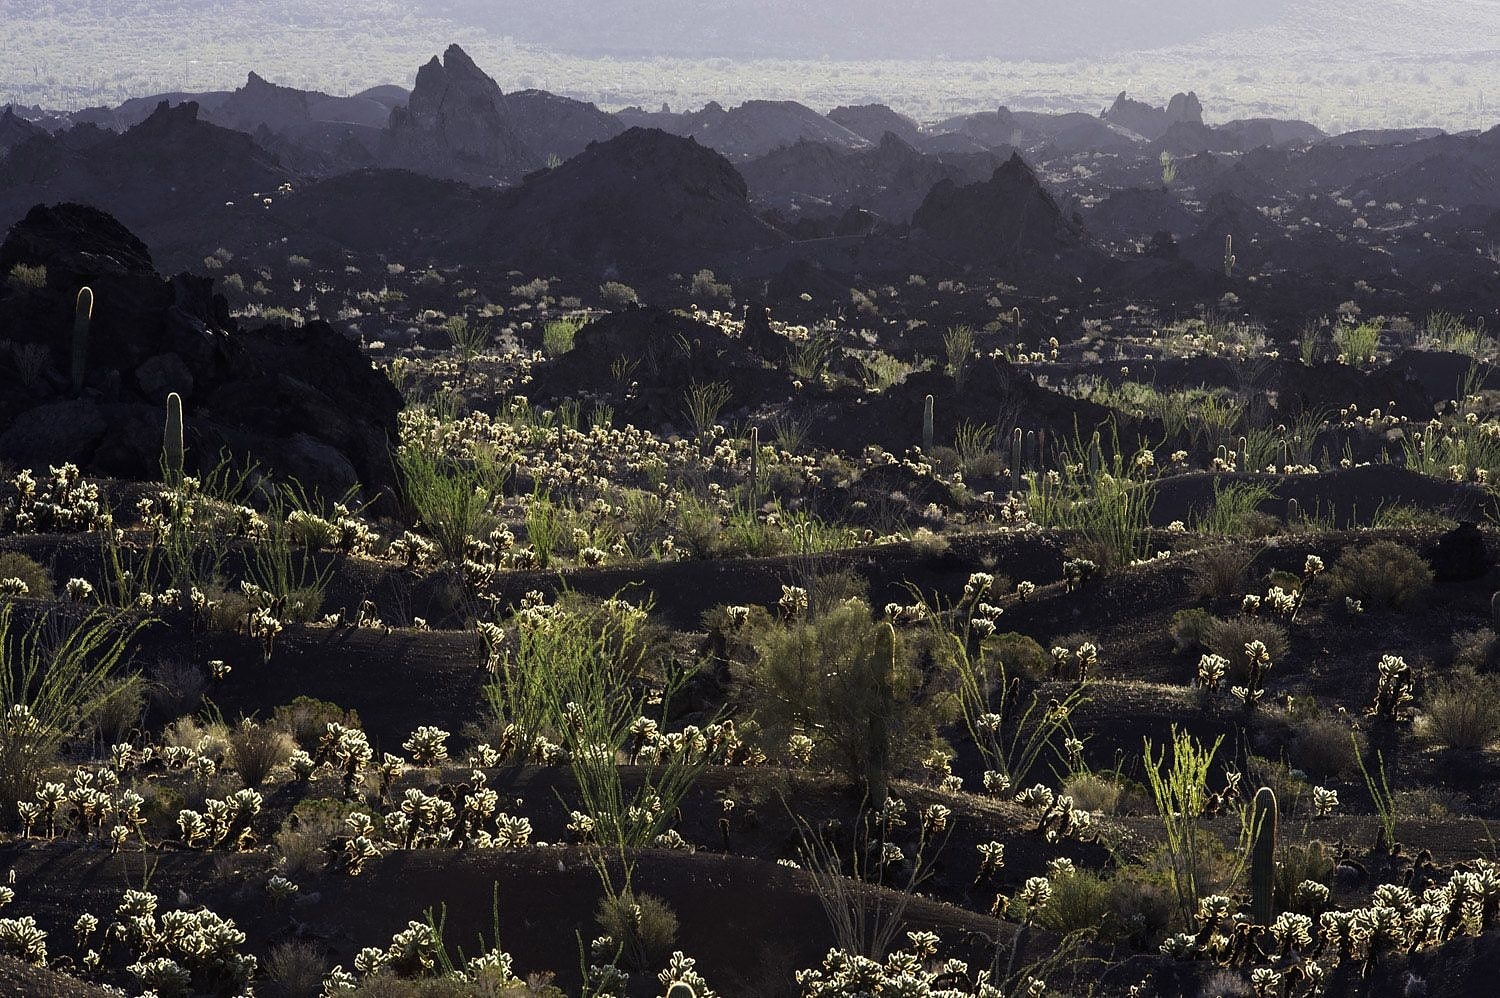 El Pinacate y Gran Desierto de Altar Biosphere Reserve, Mexico